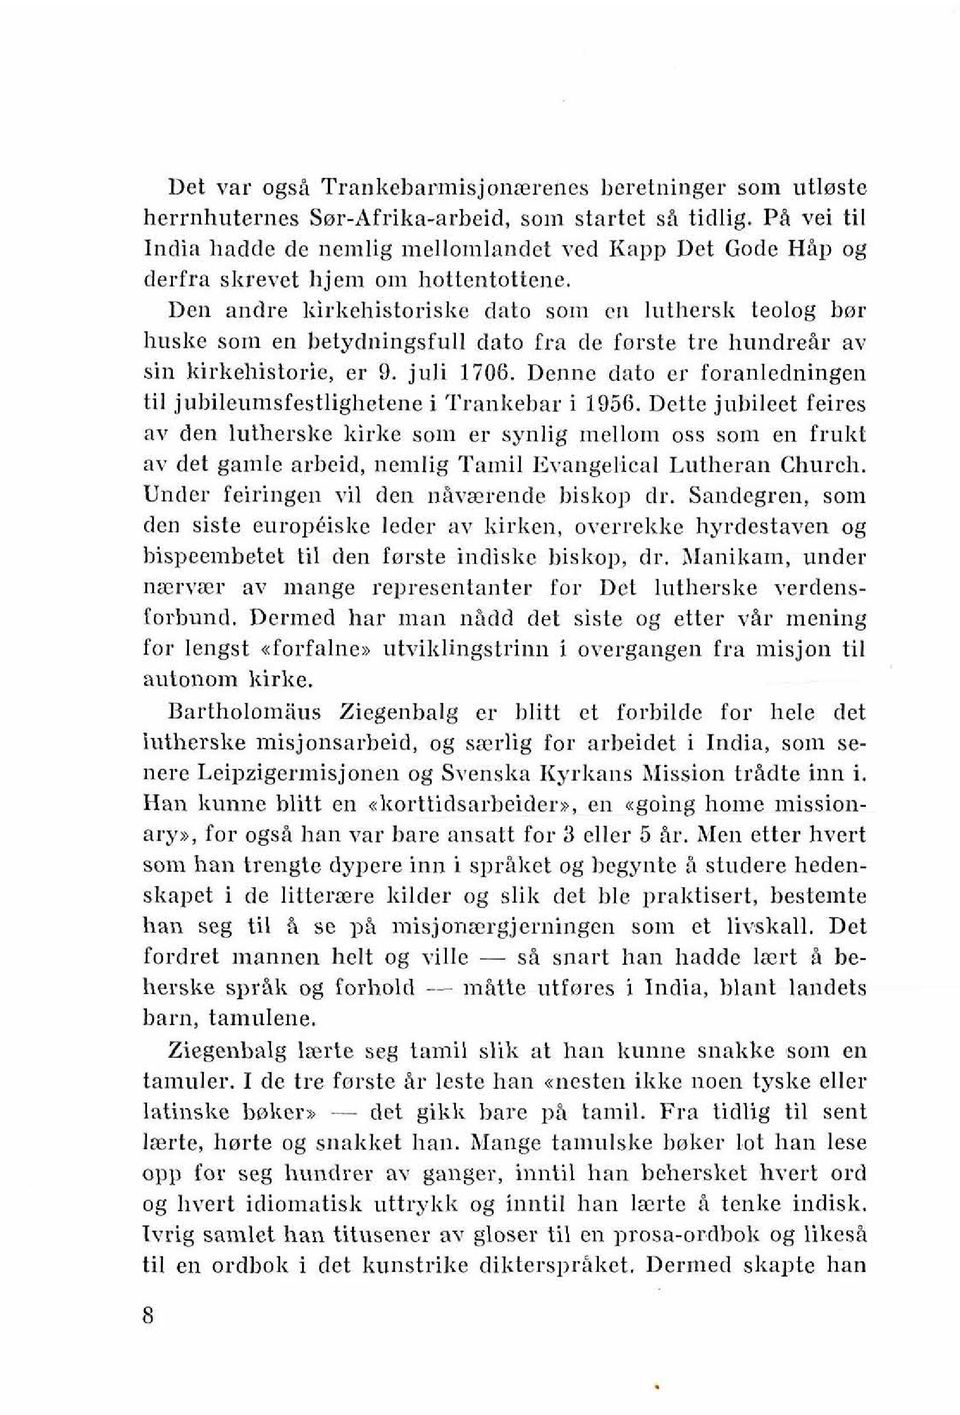 Den andre liirkehistoriske dato som en lutbersk teolog bor huske sorn en betydningsfull dato fm de forste ire hundreir av sin kirkehistorie, er 9. juli 1706.